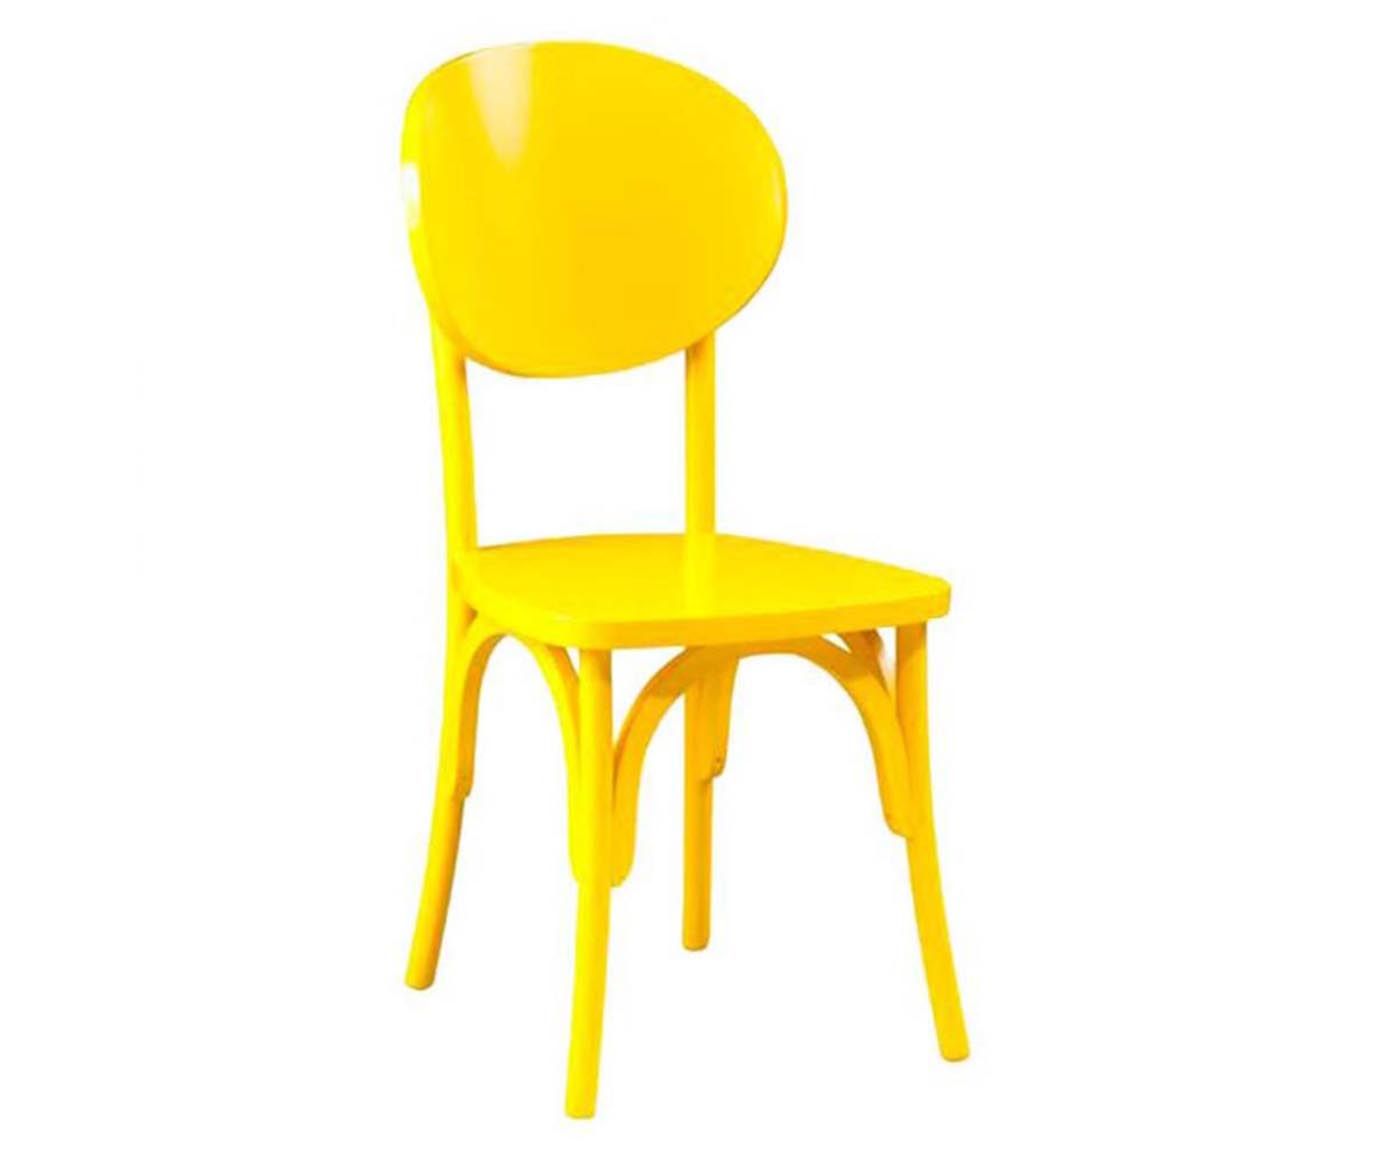 Cadeira romarin round - soleil | Westwing.com.br